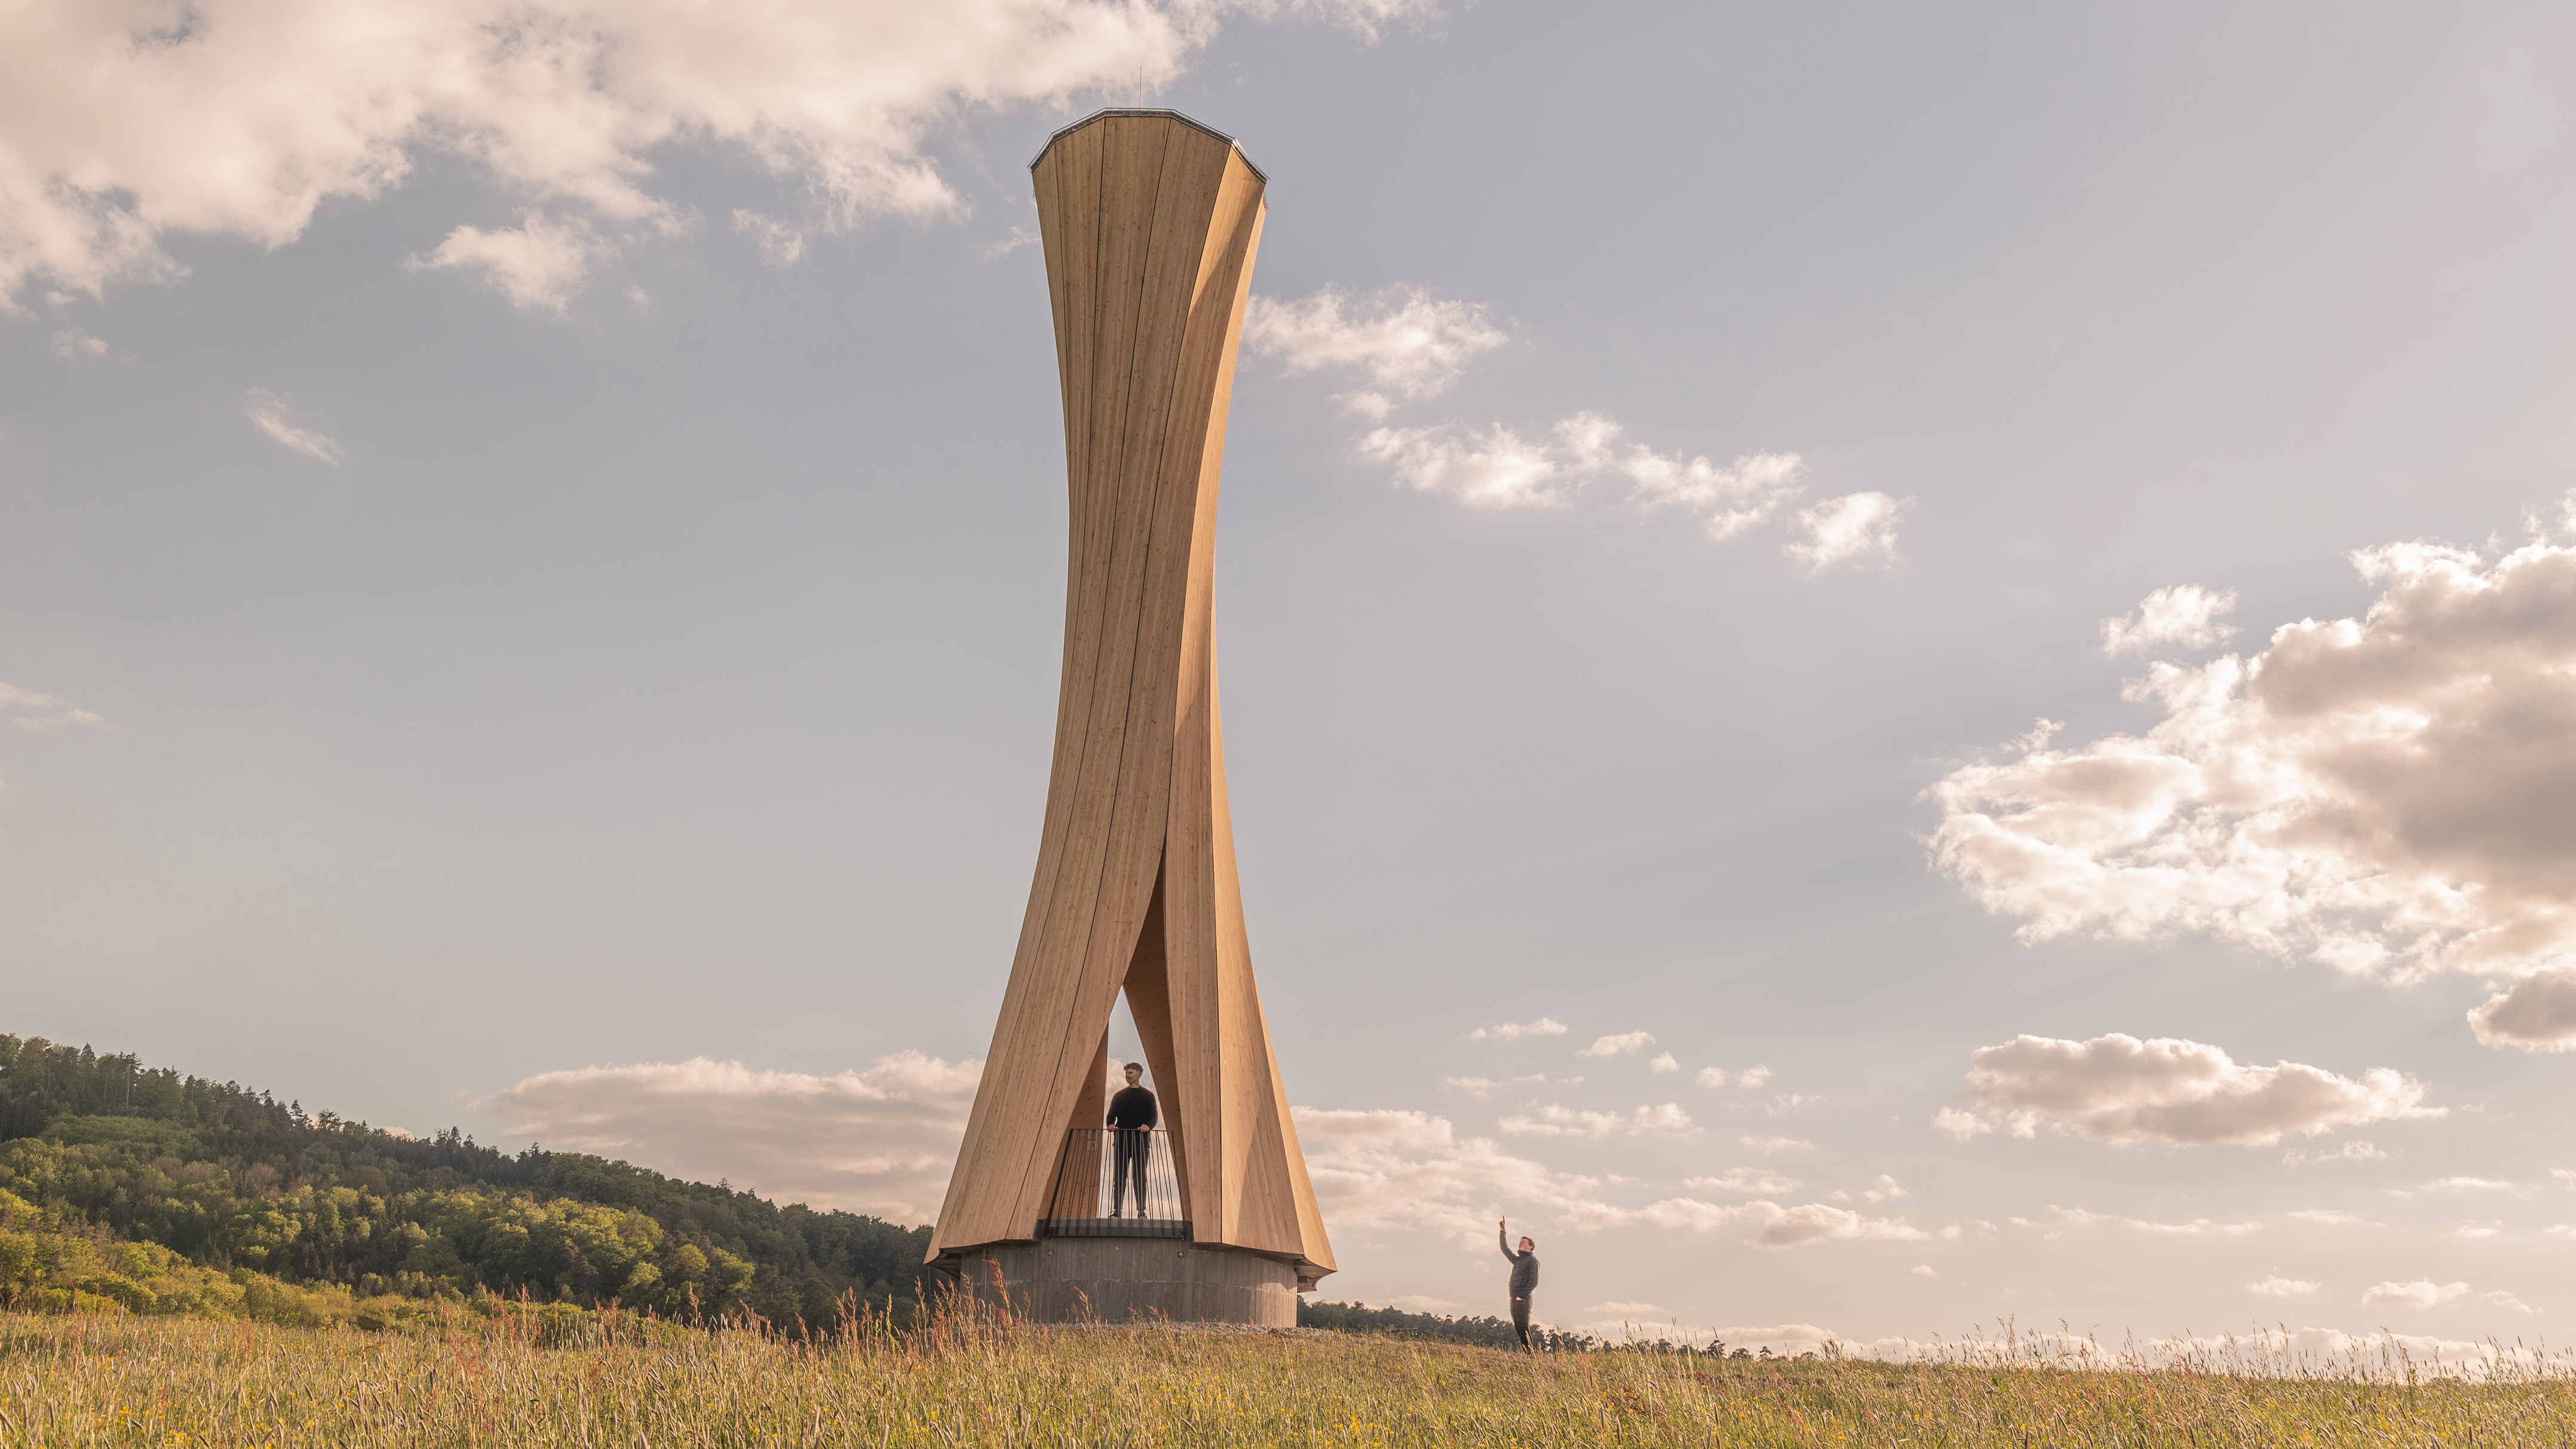 Unique landmarks. Башня Урбаха. Turm 3 башня. Стройботаническая башня» в Германии;. Деревянная башня.